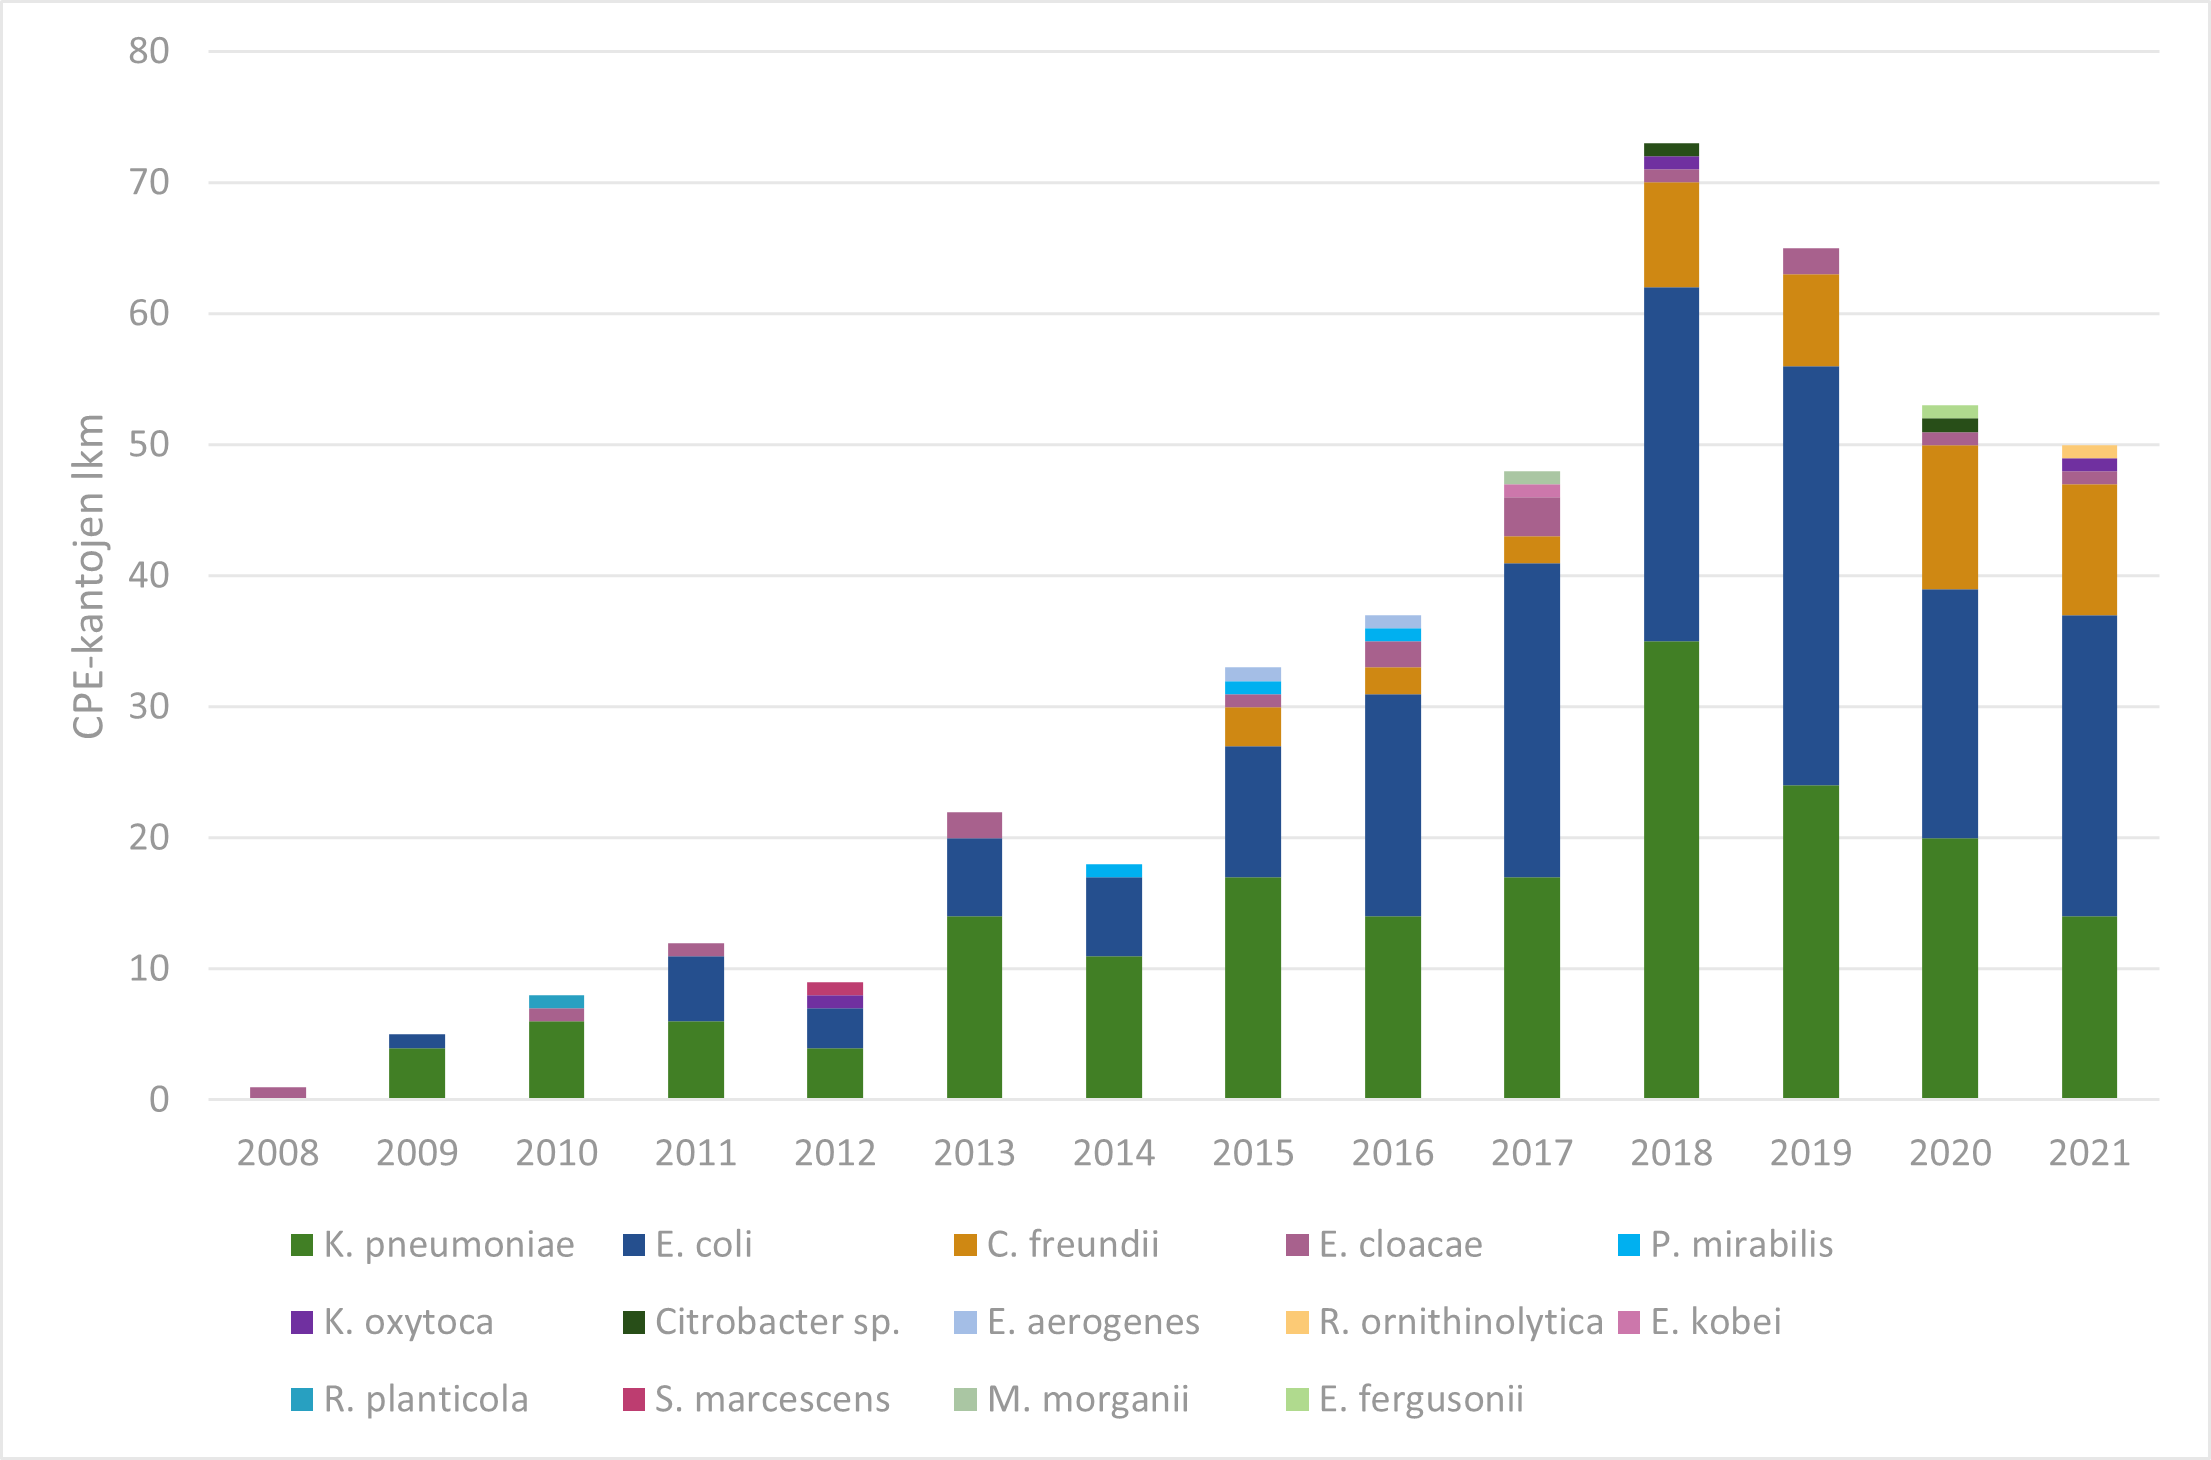 CPE-kantojen määrä ja lajijakauma vuosina 2008-2021.